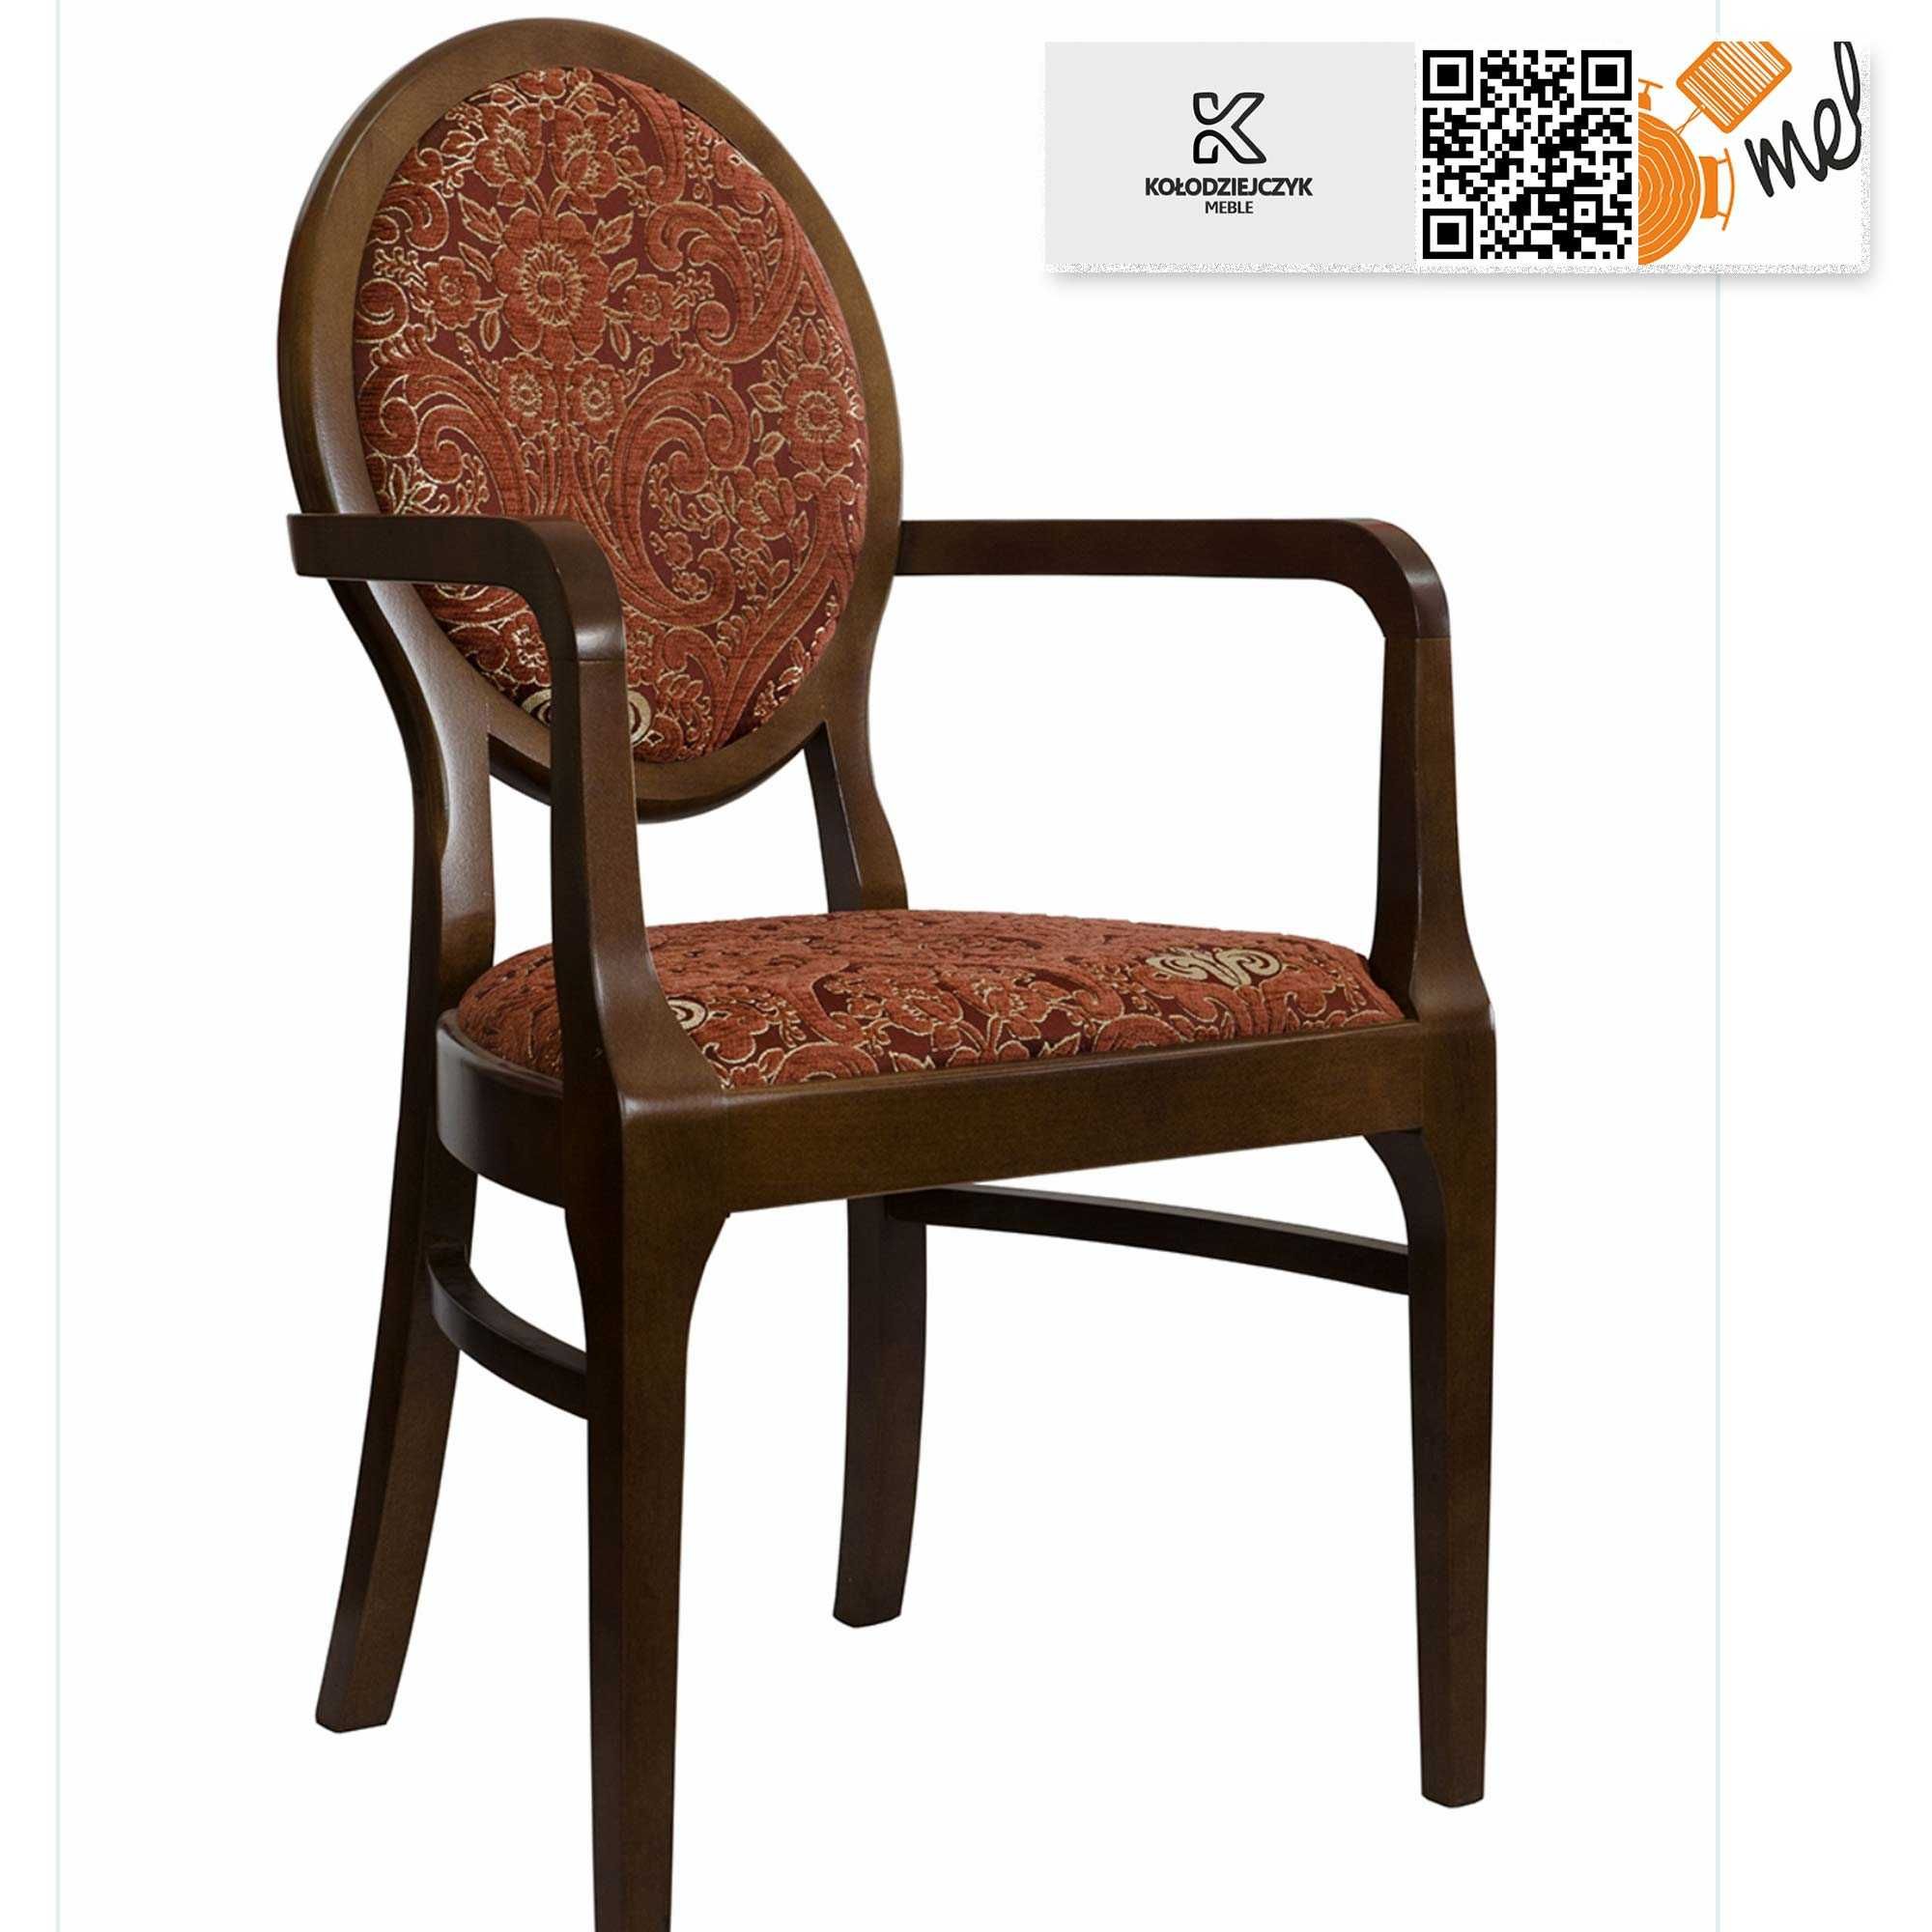 Drewniane krzesło K68 Patelnia z podłokietnikami